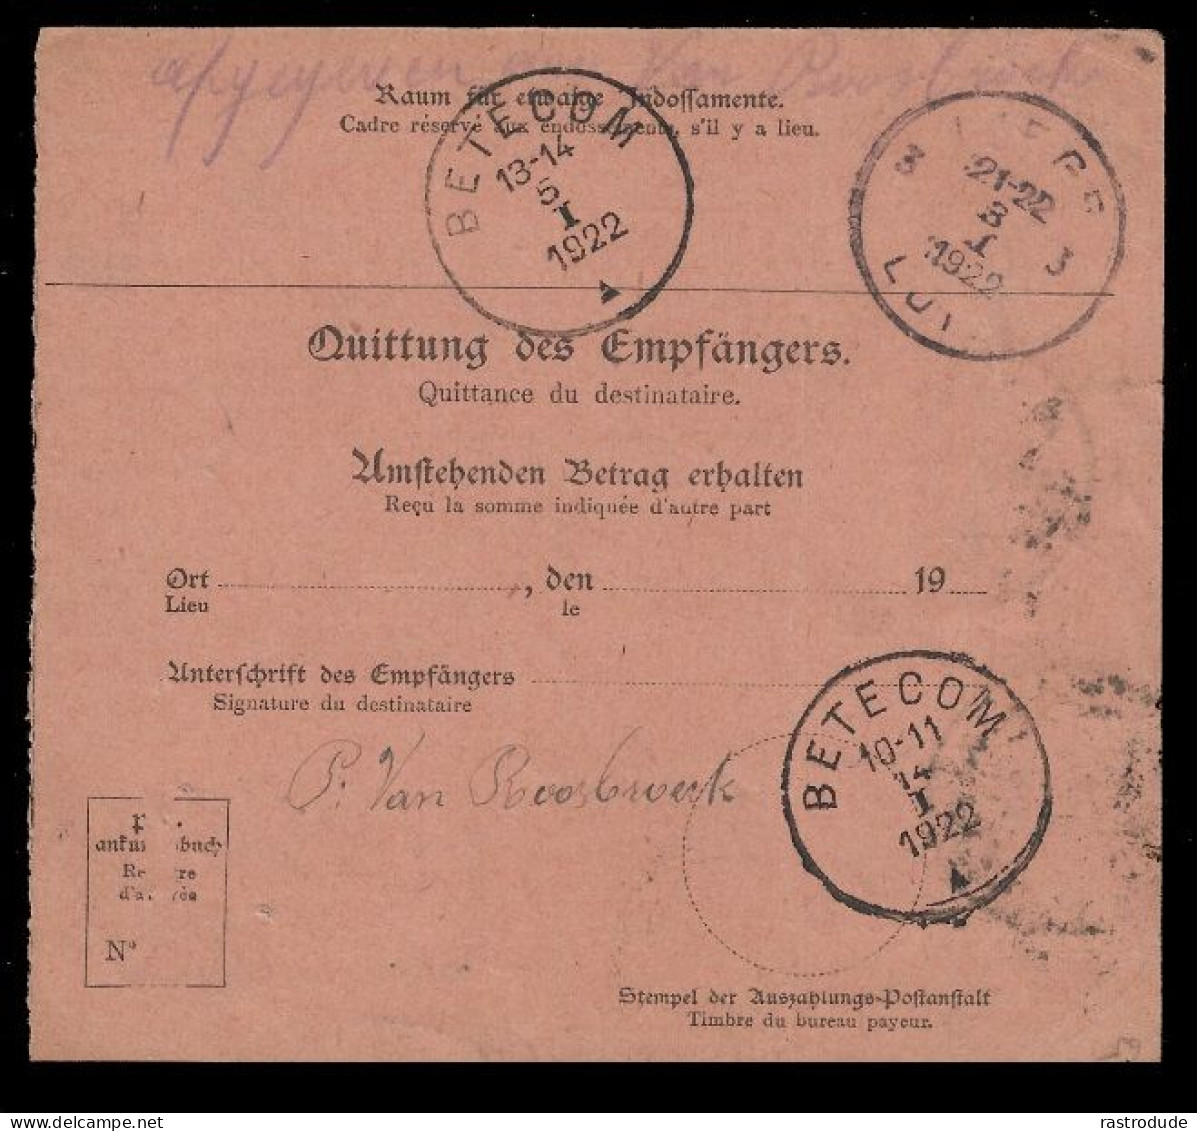 1922 RARE - BELGIEN-MILITÄRPOST EUPEN 1Fr. AUSLANDSPOSTANWEISUNG - MANDAT DE POSTE INTERNATIONAL - OC55/105 Eupen & Malmédy